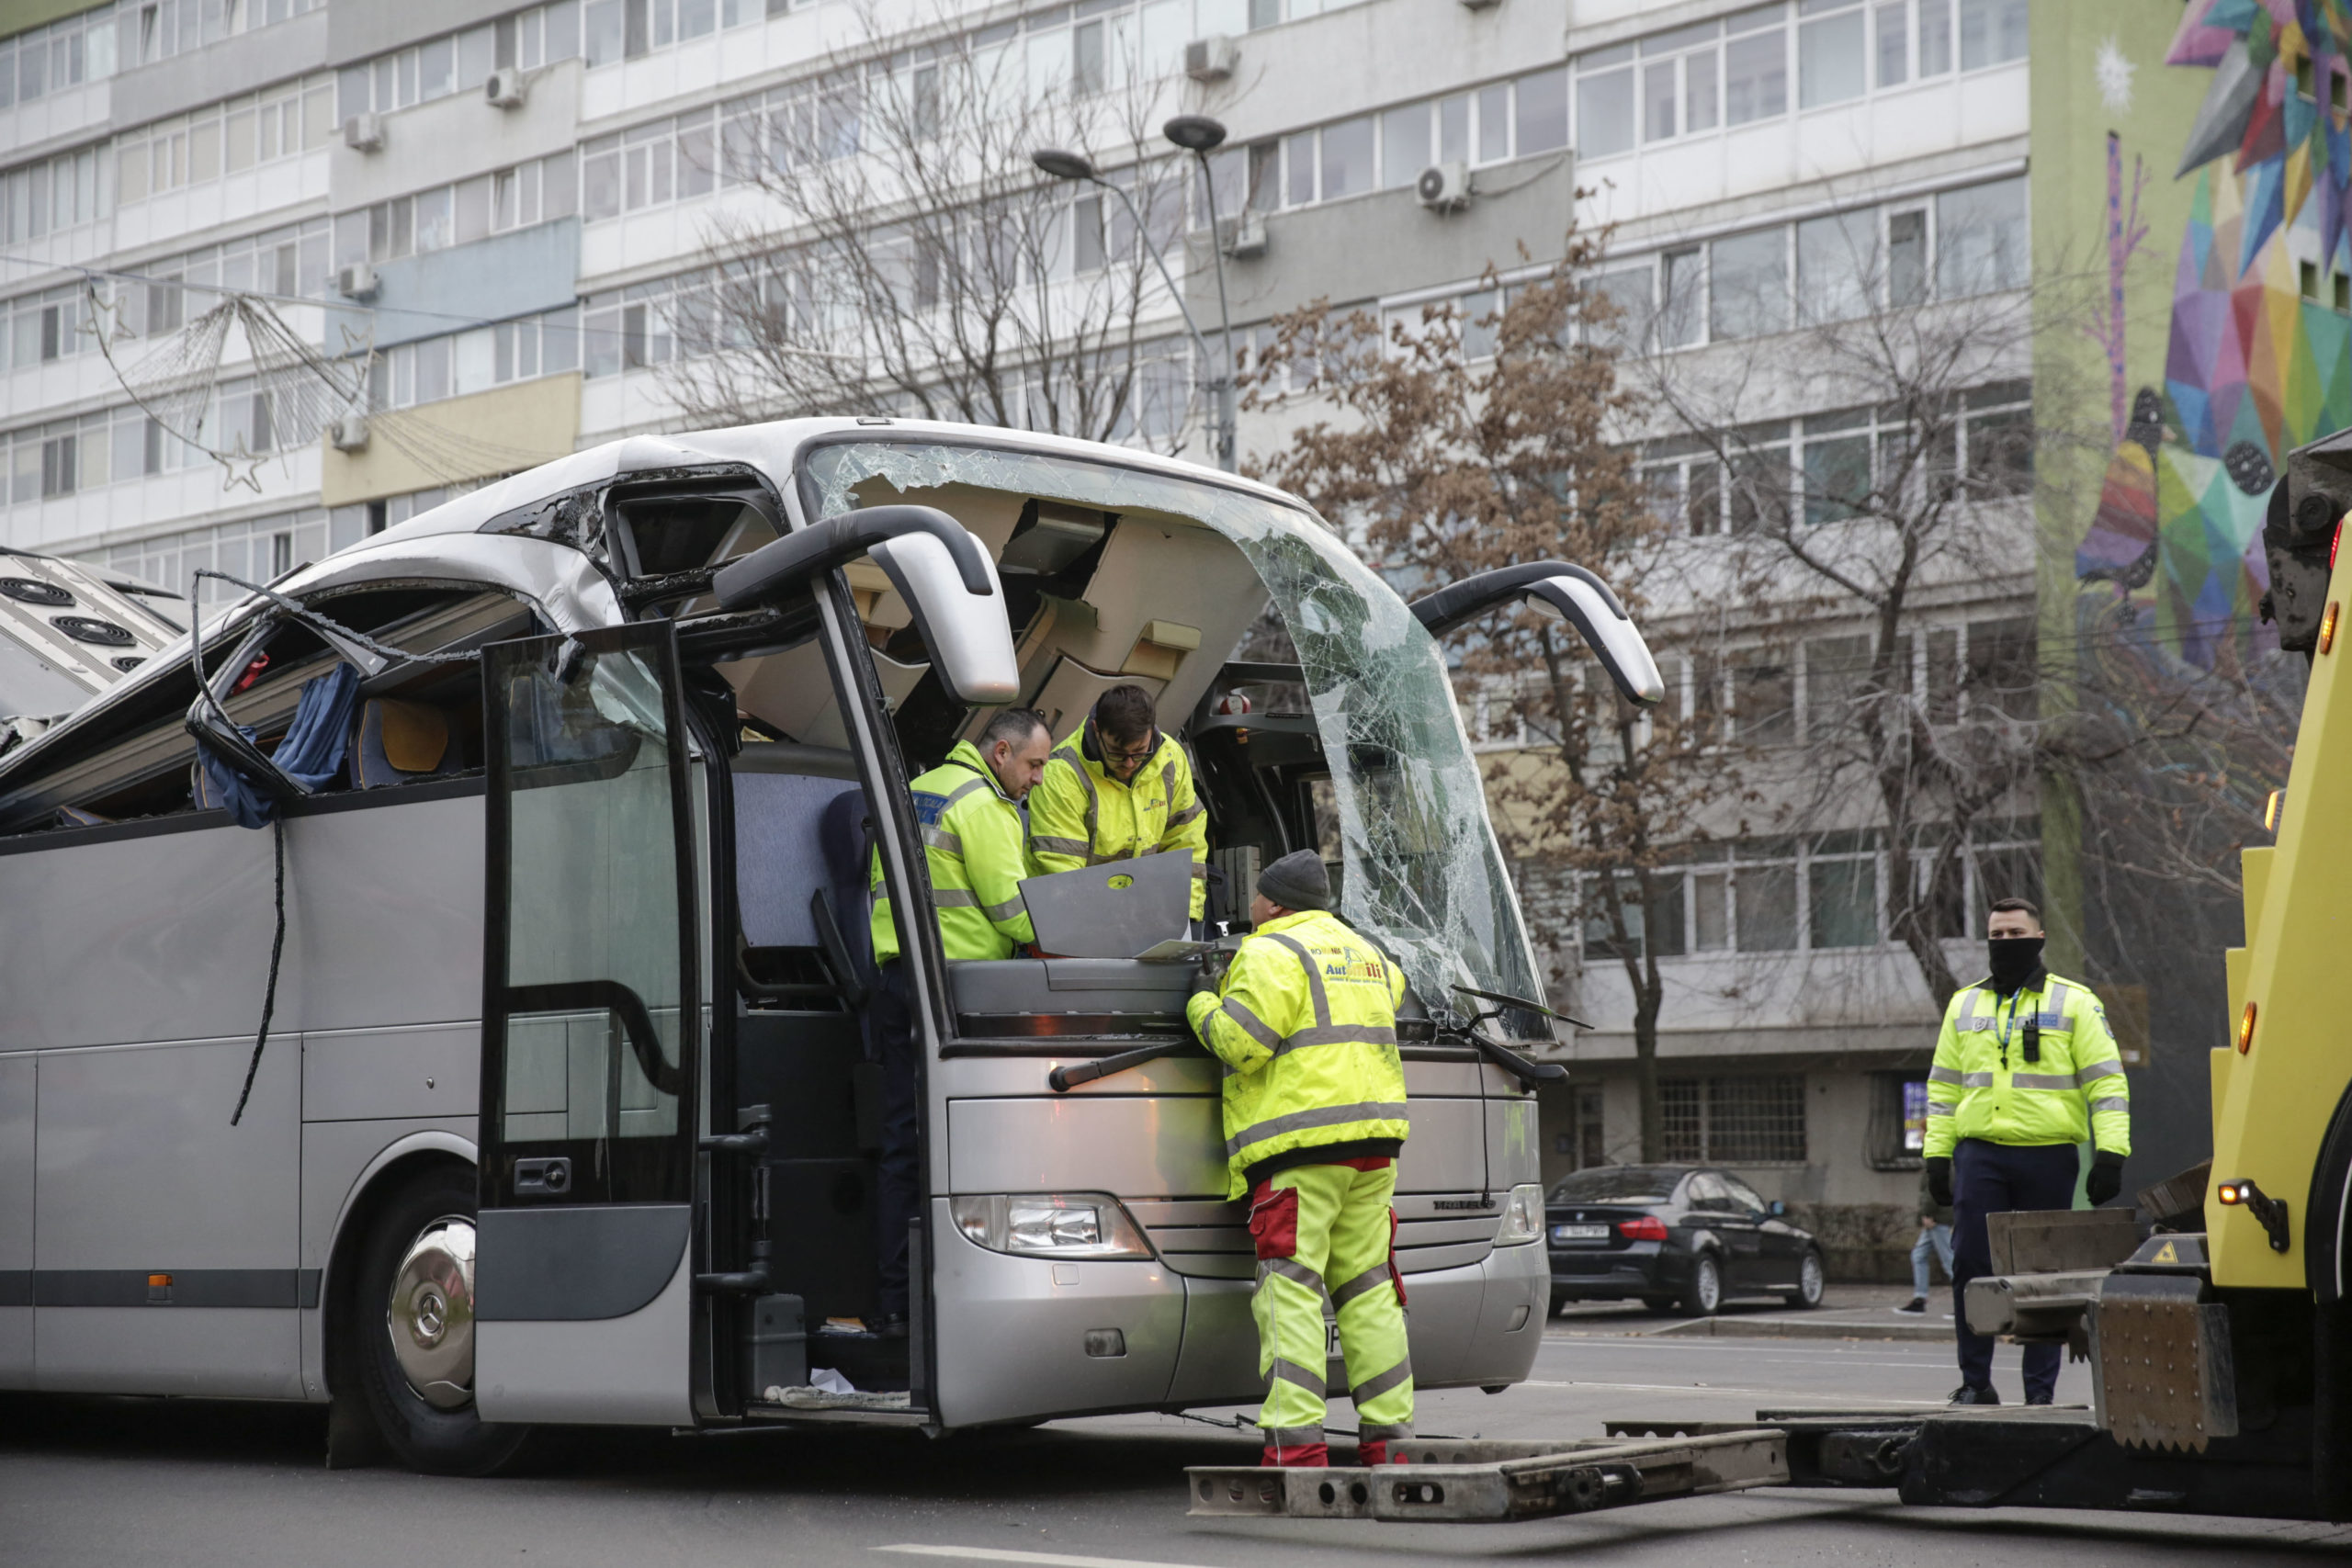 Δυστύχημα στο Βουκουρέστι: Από Βόλο, Λάρισα και Θεσσαλονίκη οι επιβαίνοντες στο τουριστικό λεωφορείο